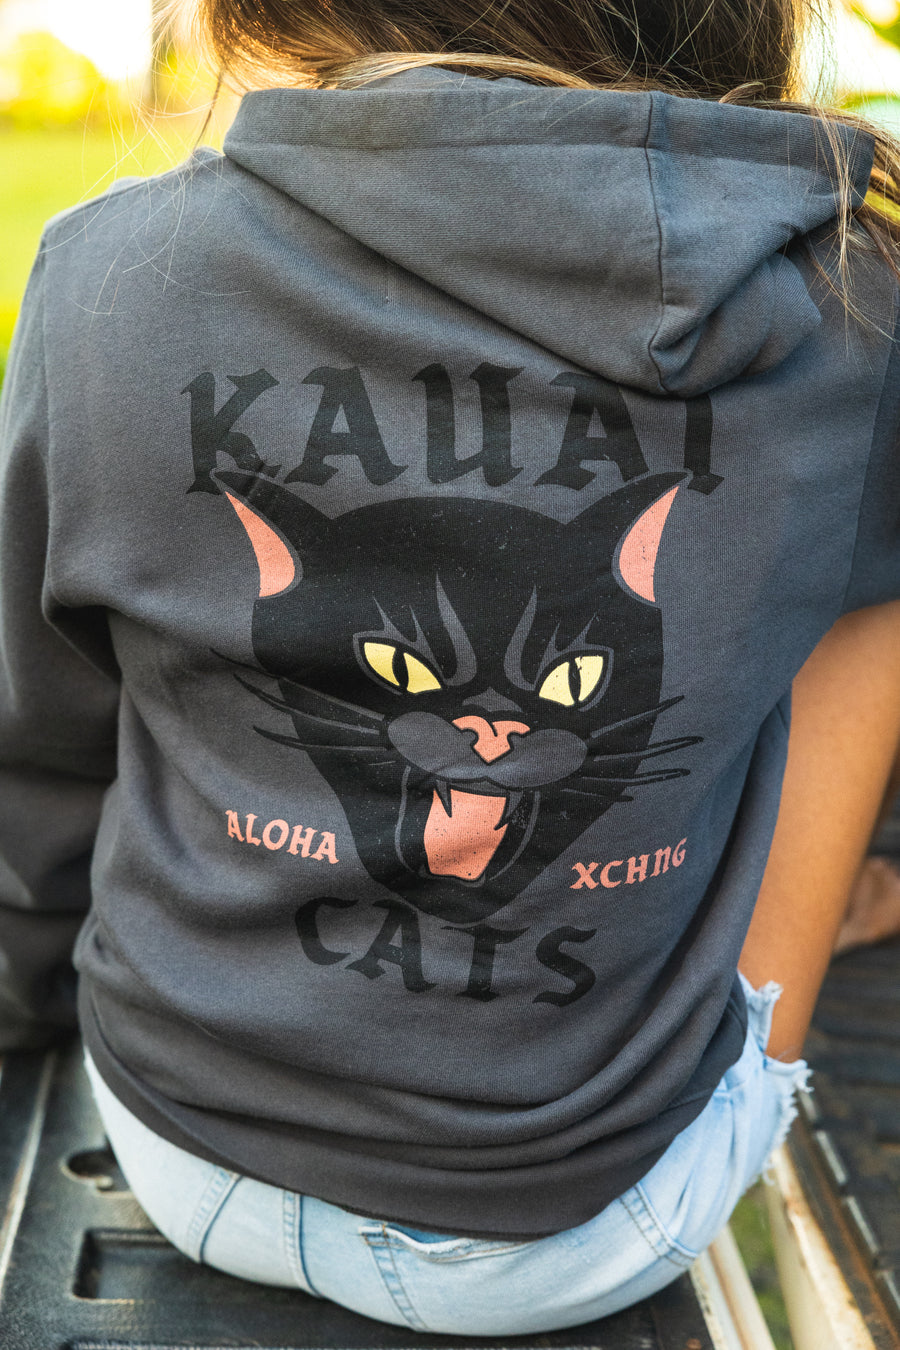 Kauai Cats Unisex Zip Up Hoodie